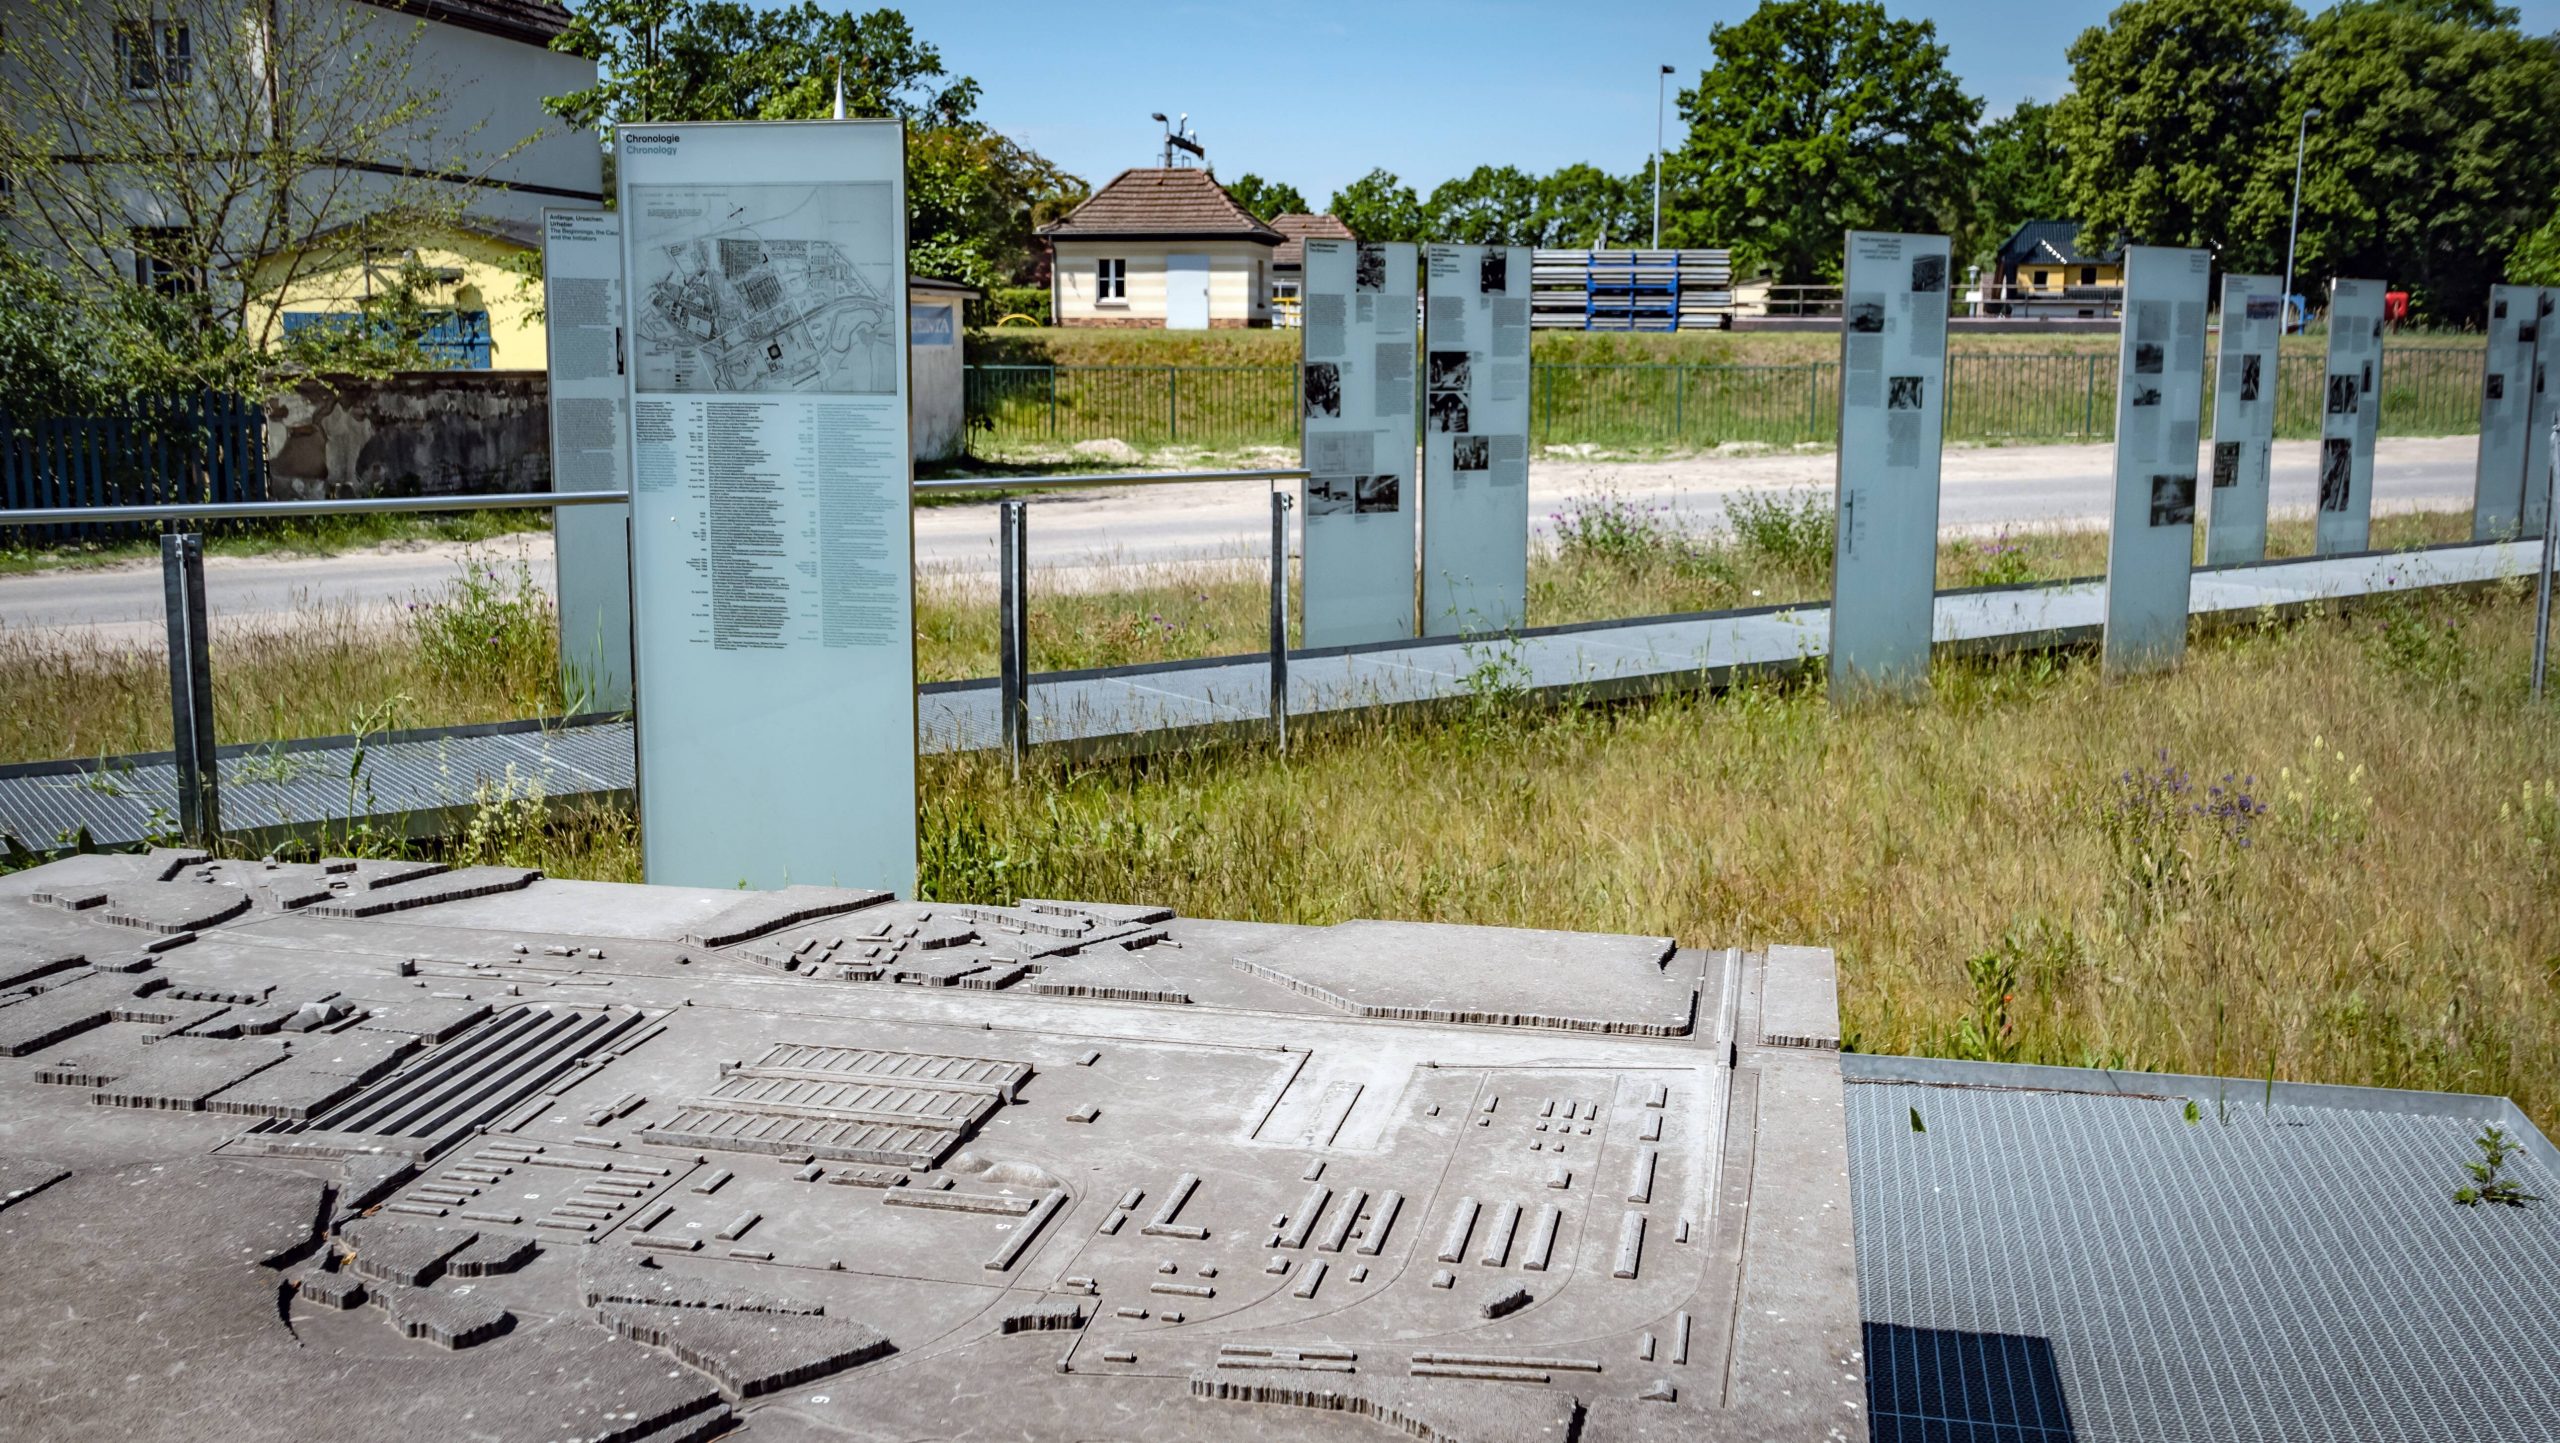 Die weitgehend zerstörten Anlagen des Außenlager Klinkerwerk des KZ Sachsenhausen zeigt ein Modell als Teil der Ausstellung auf dem Gelände des ehemaligen SS-Schießstandes.